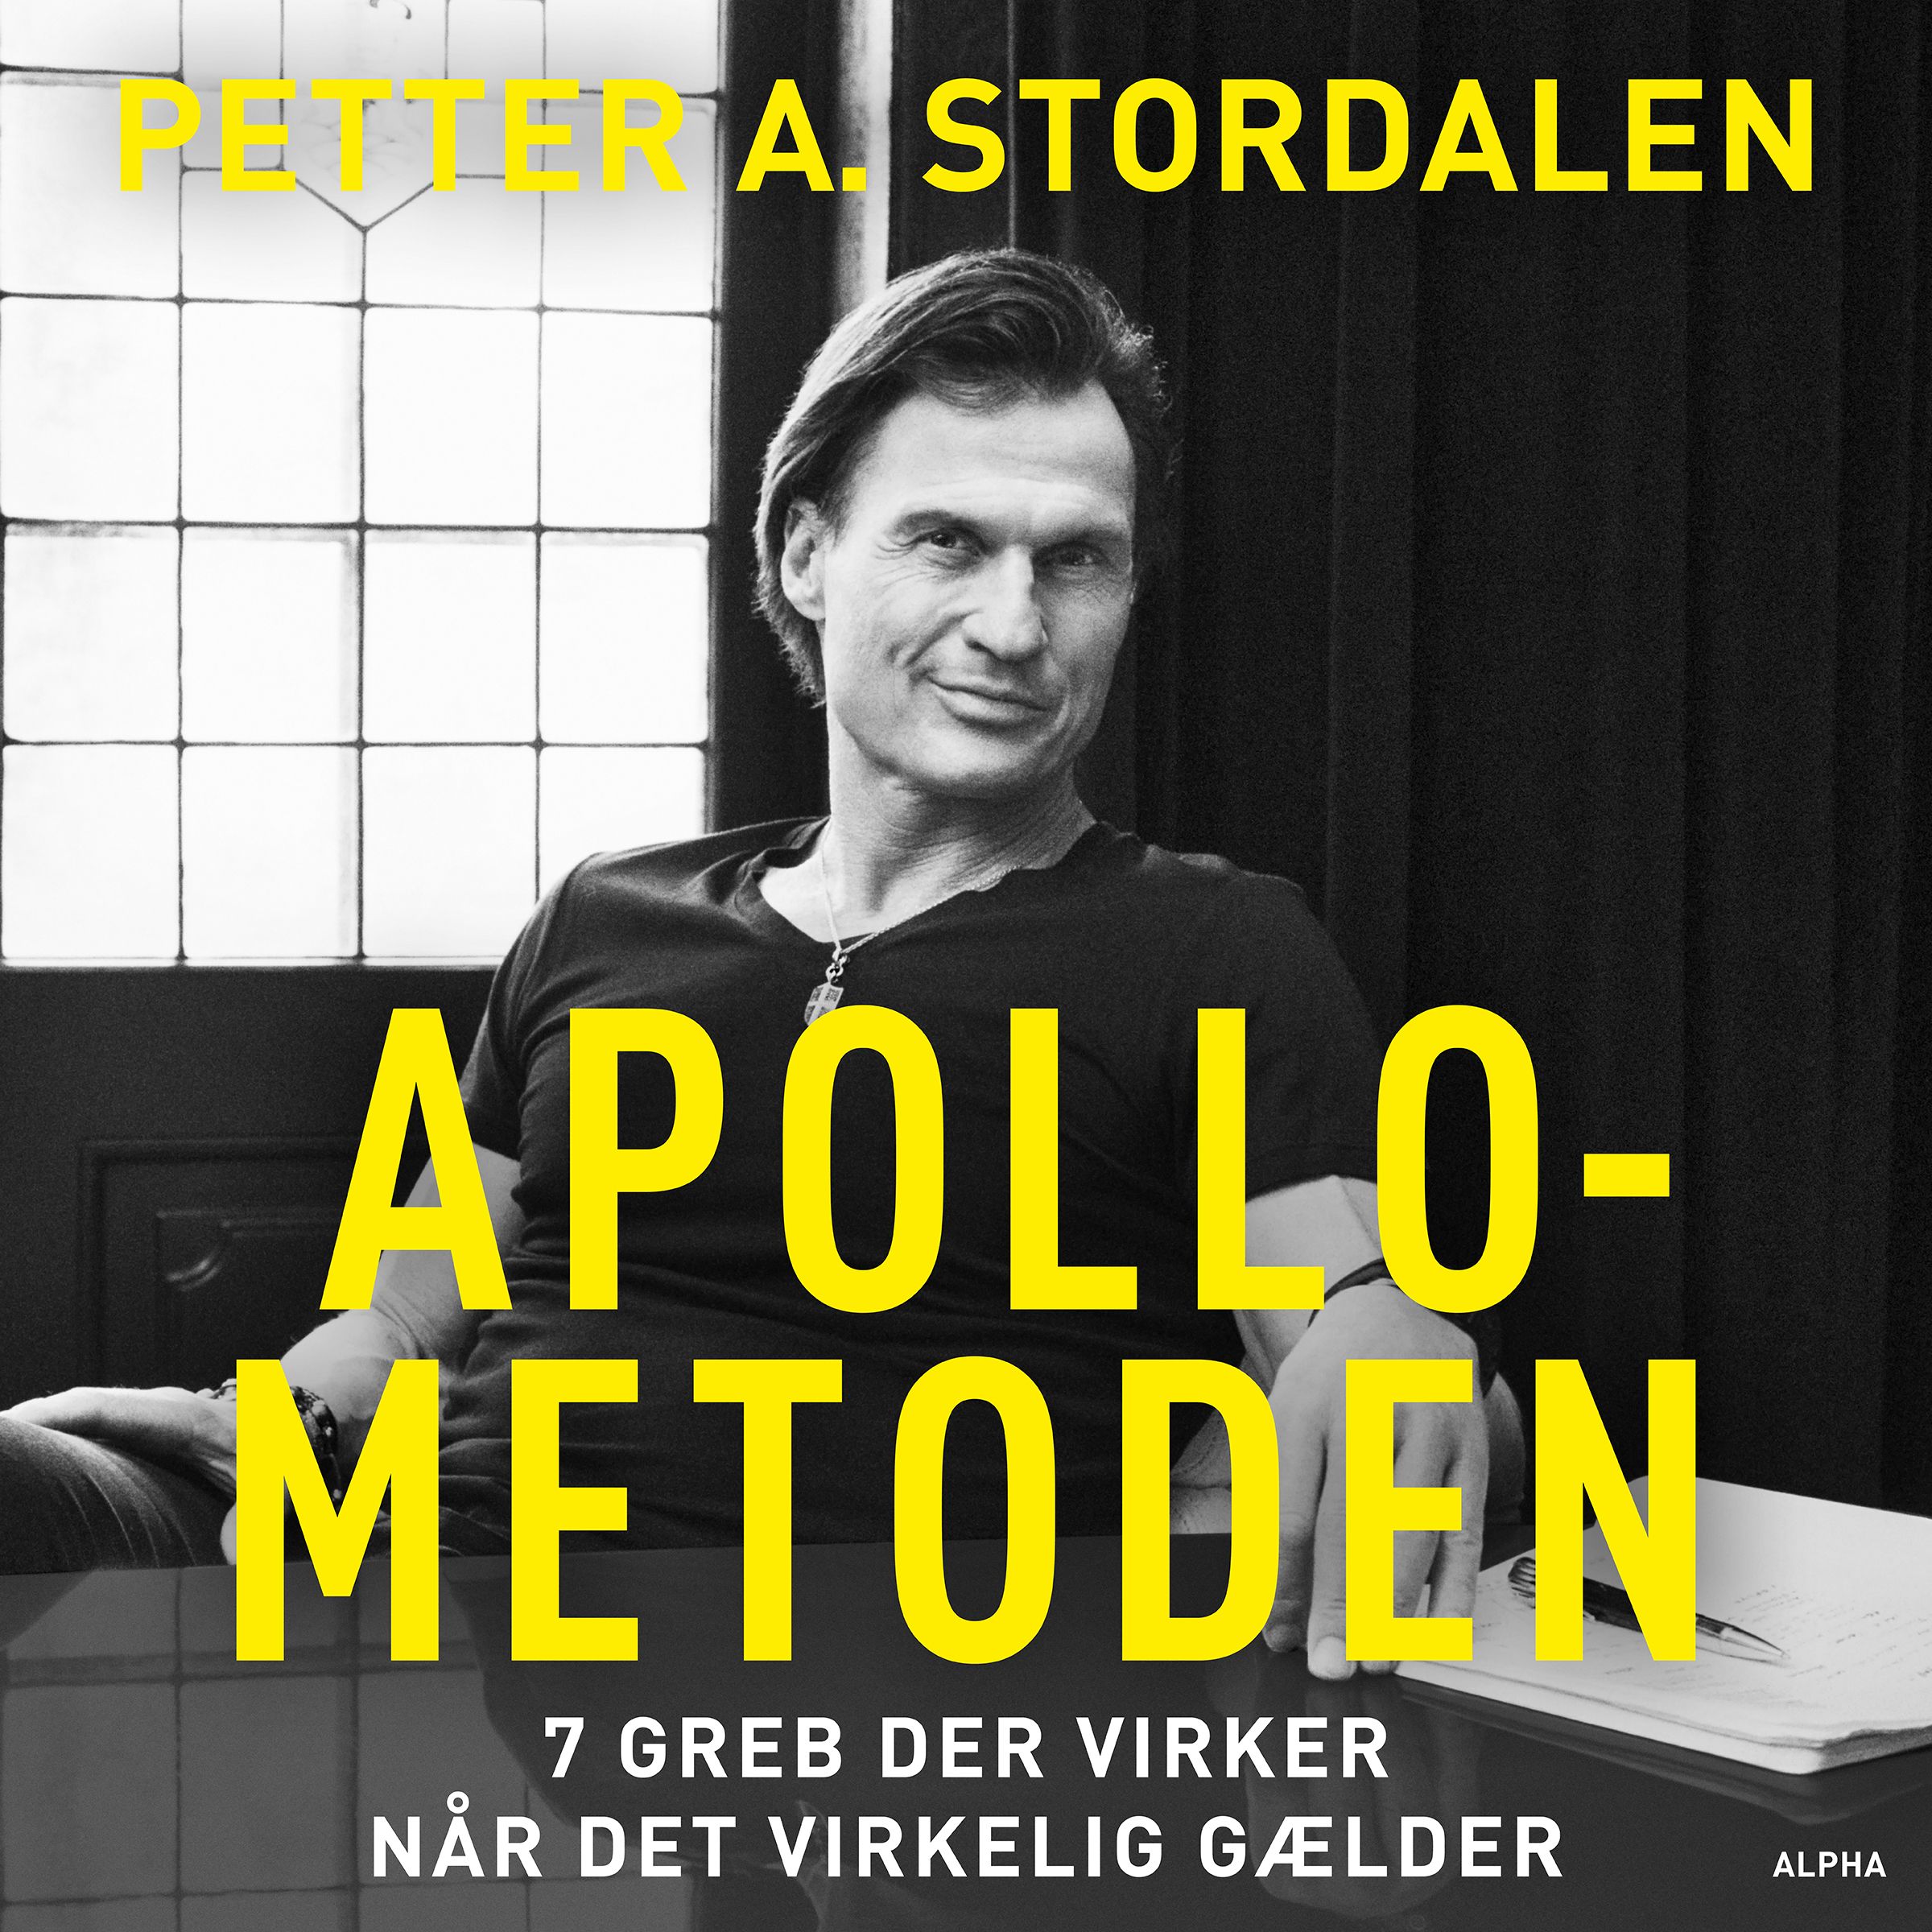 Apollo-metoden, ljudbok av Petter A. Stordalen